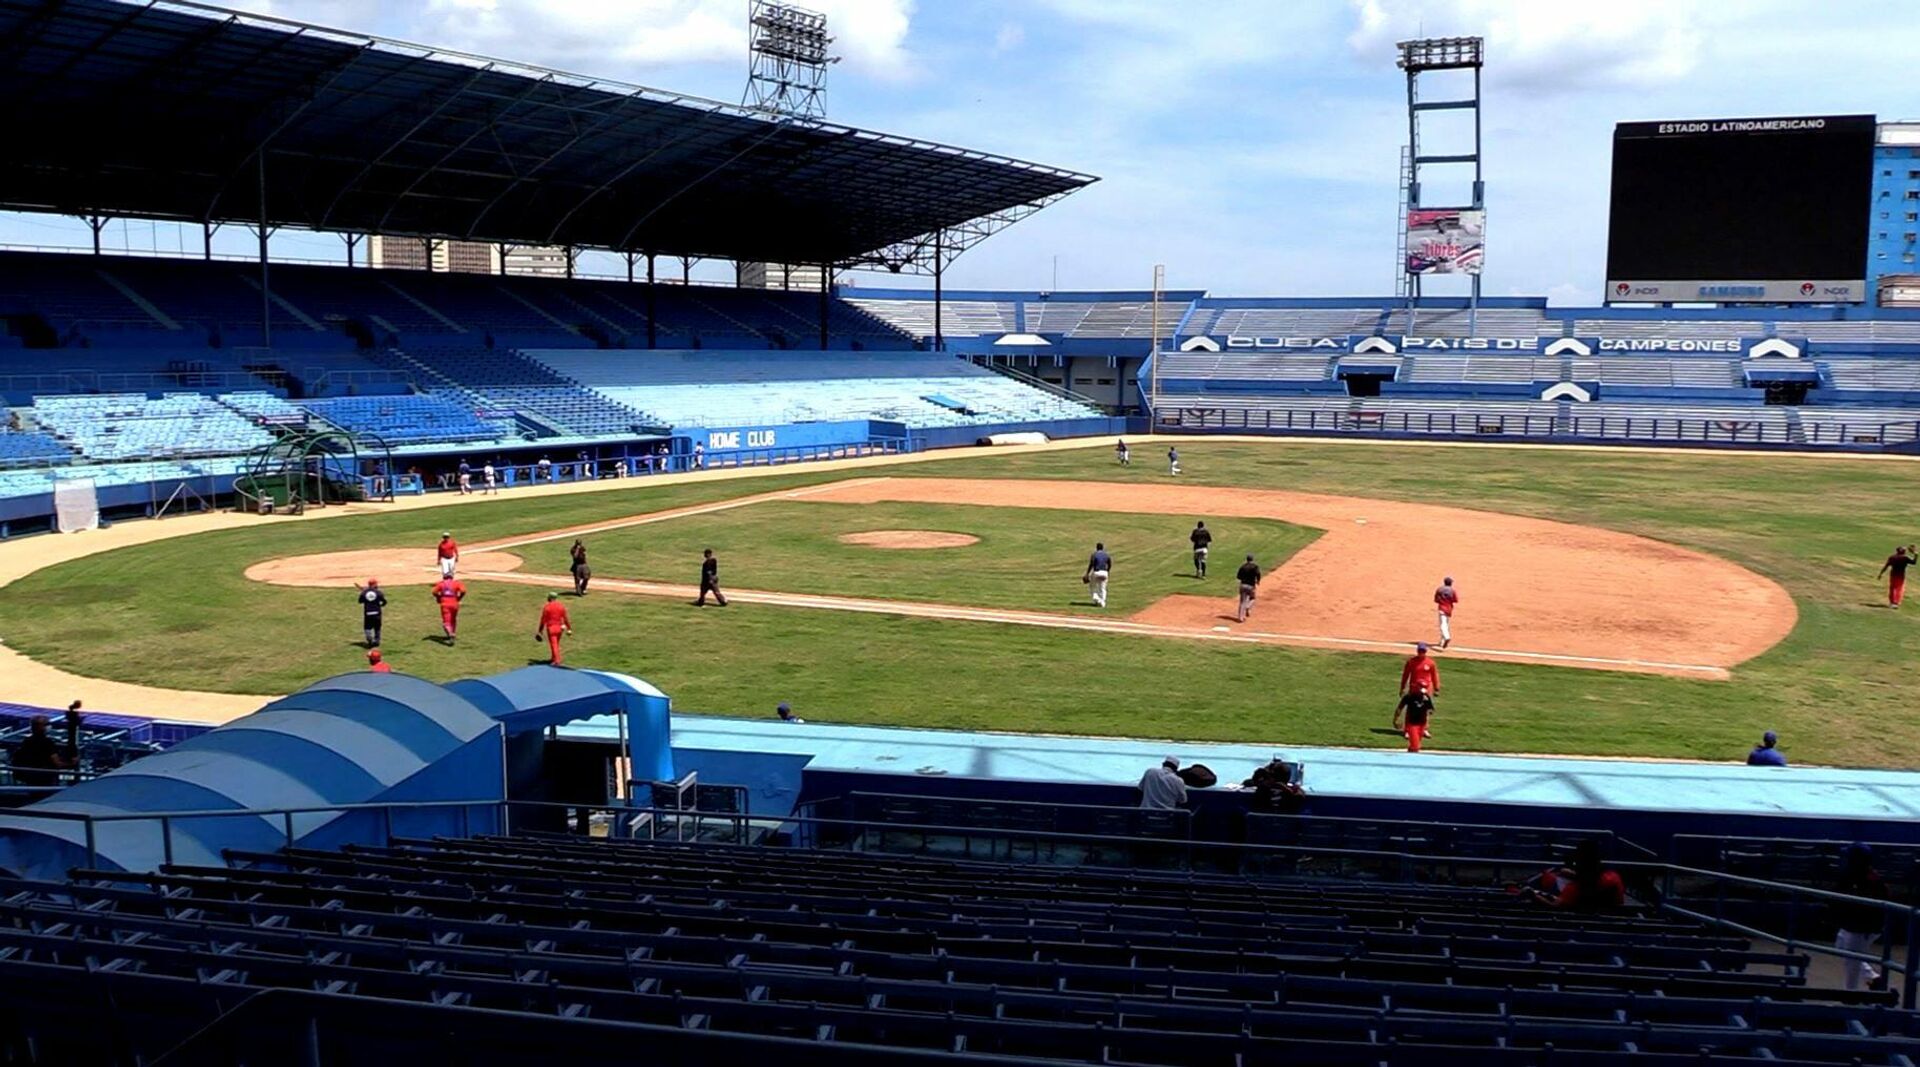 La última adquisición de piezas e insumos para la pantalla gigante del  Estadio Latinoamericano de La Habana costó 10 000 dólares - Sputnik Mundo, 1920, 02.08.2021